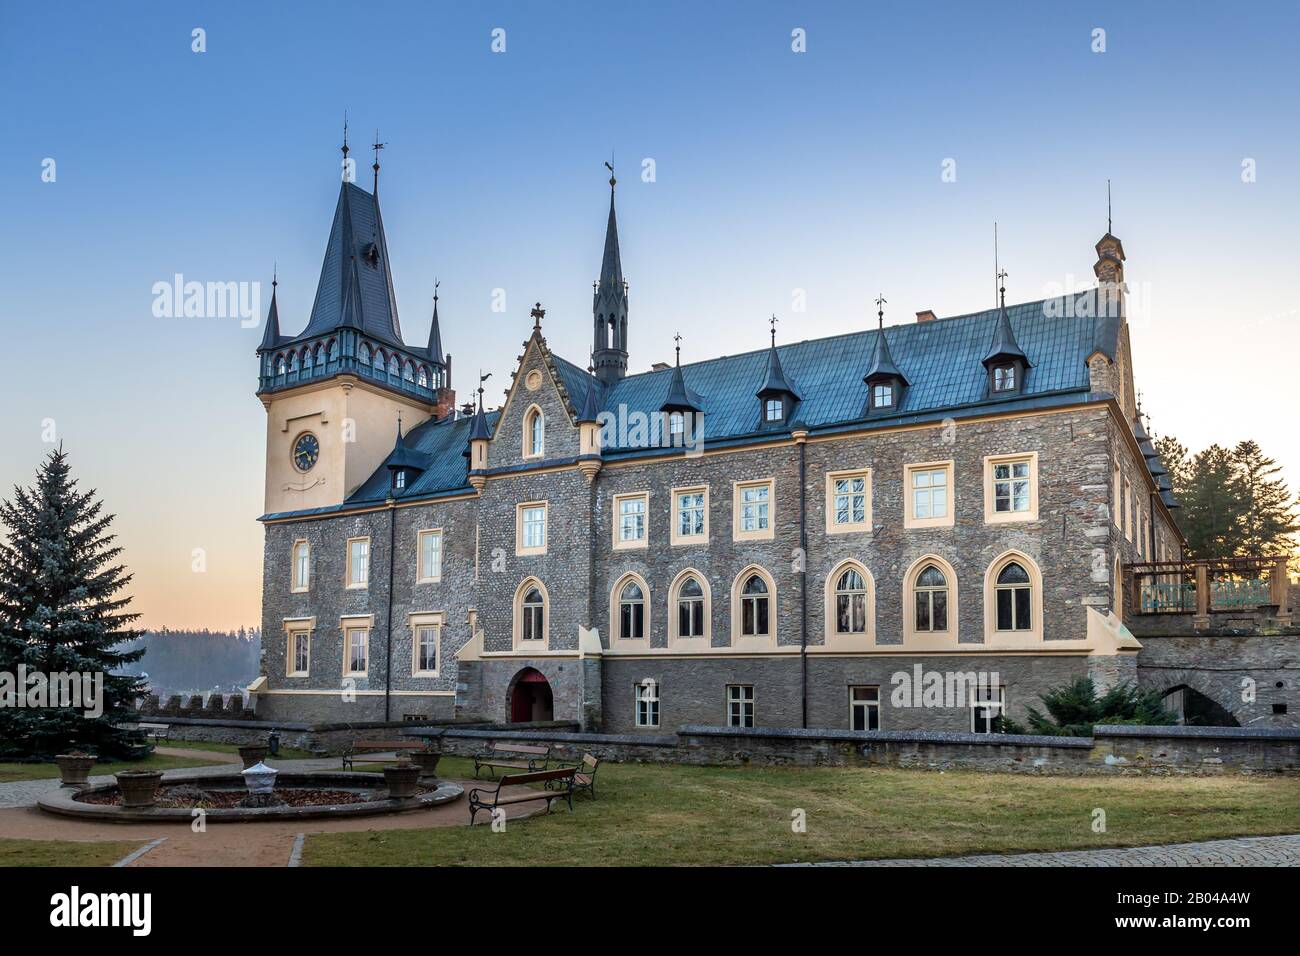 Zruc nad Sazavou, République tchèque - un magnifique château gothique à Zruc nad Sazavou en hiver. Région de la Bohême centrale de la Tchéquie. Banque D'Images